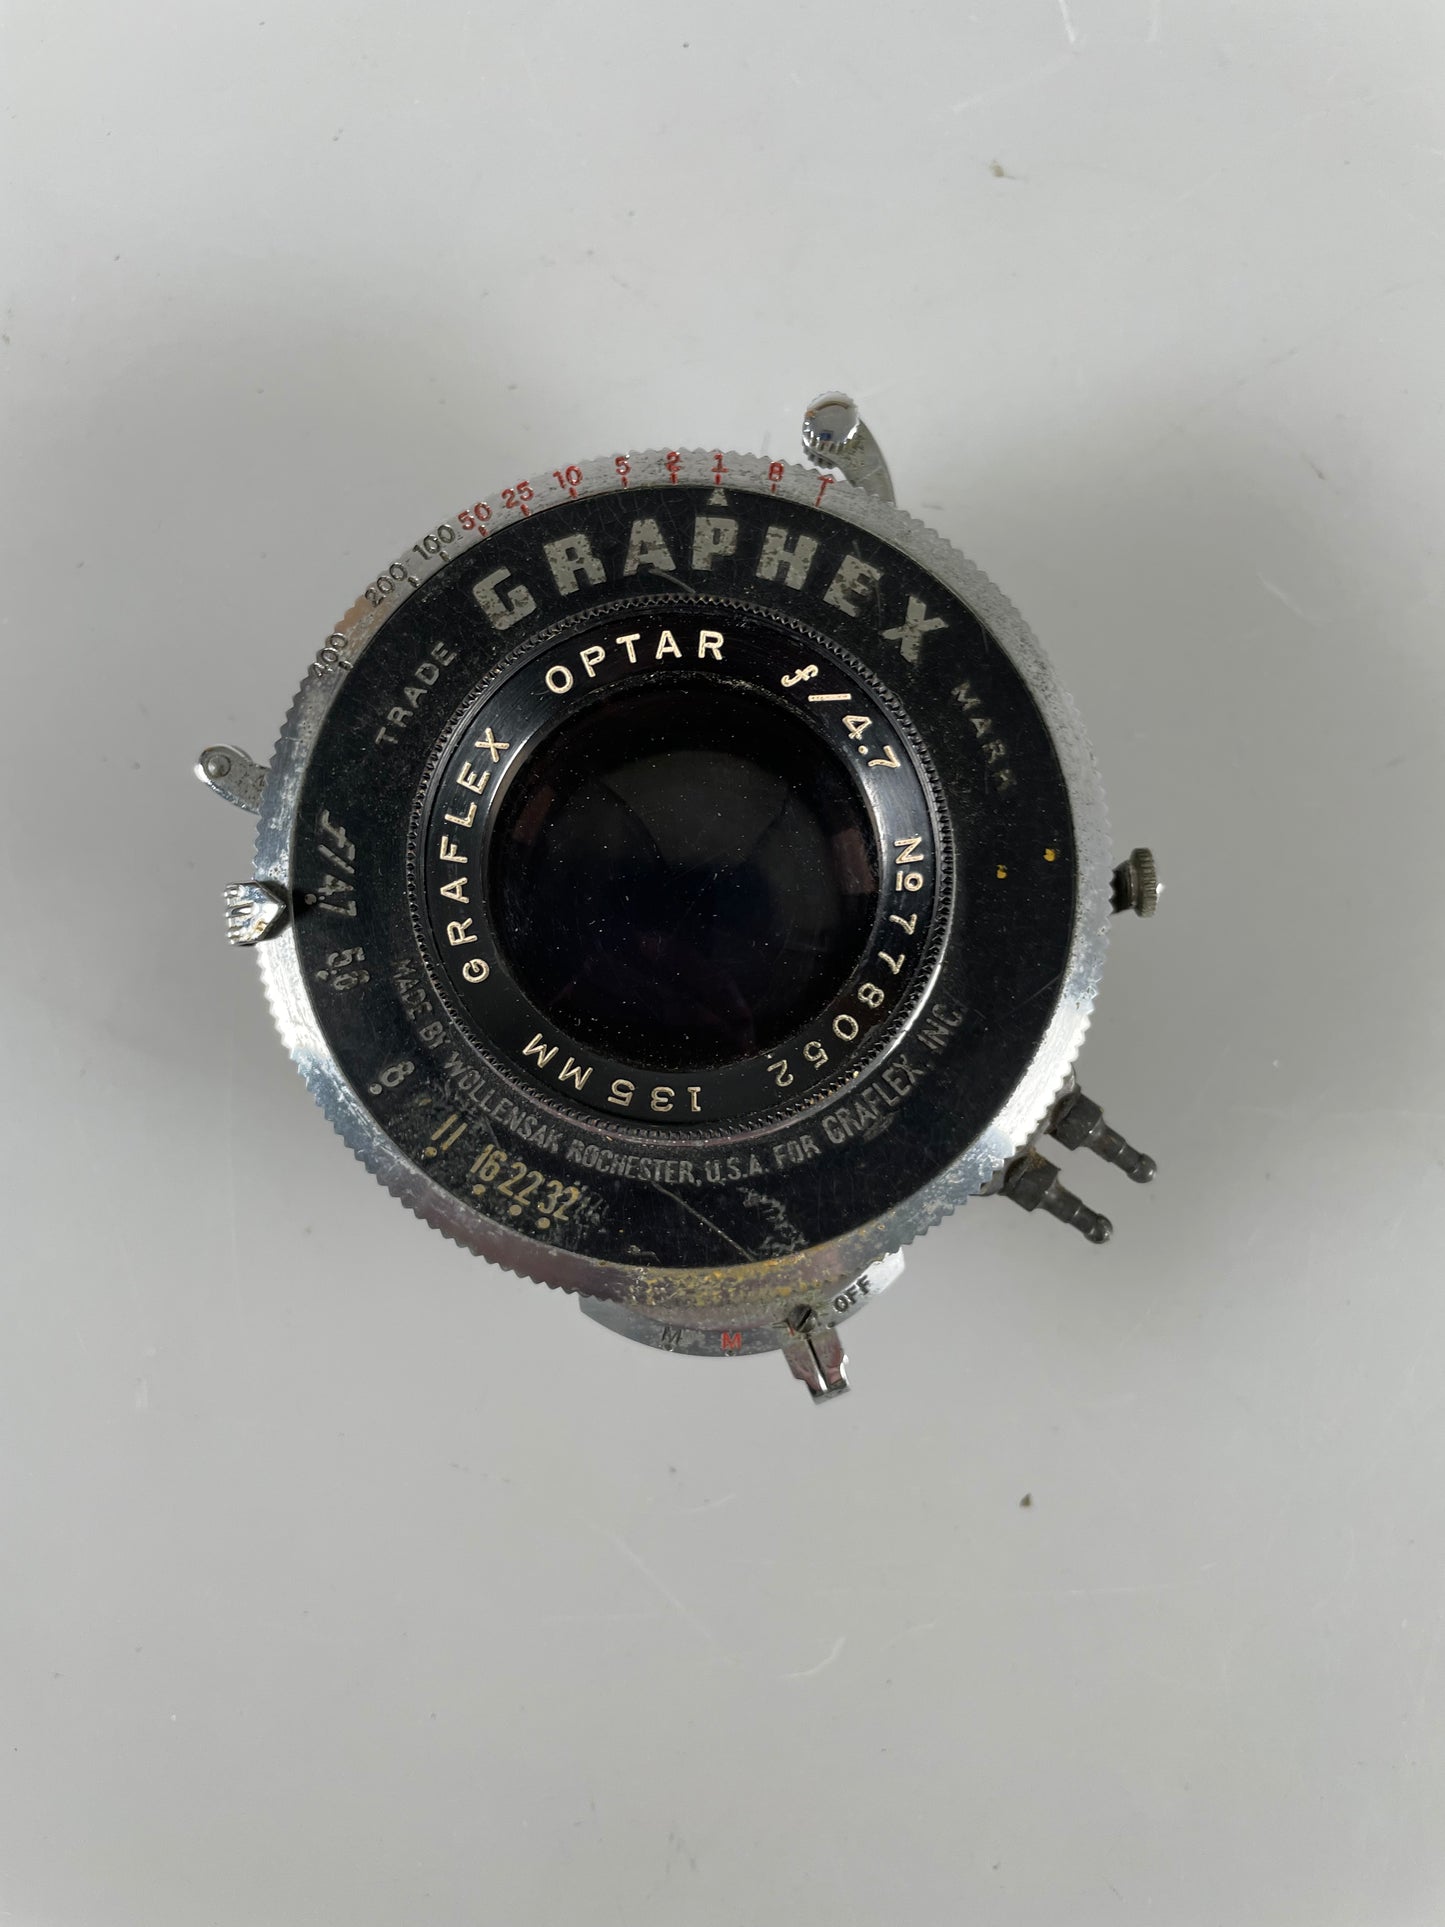 Graflex Optar 135mm f4.7 large format lens in shutter